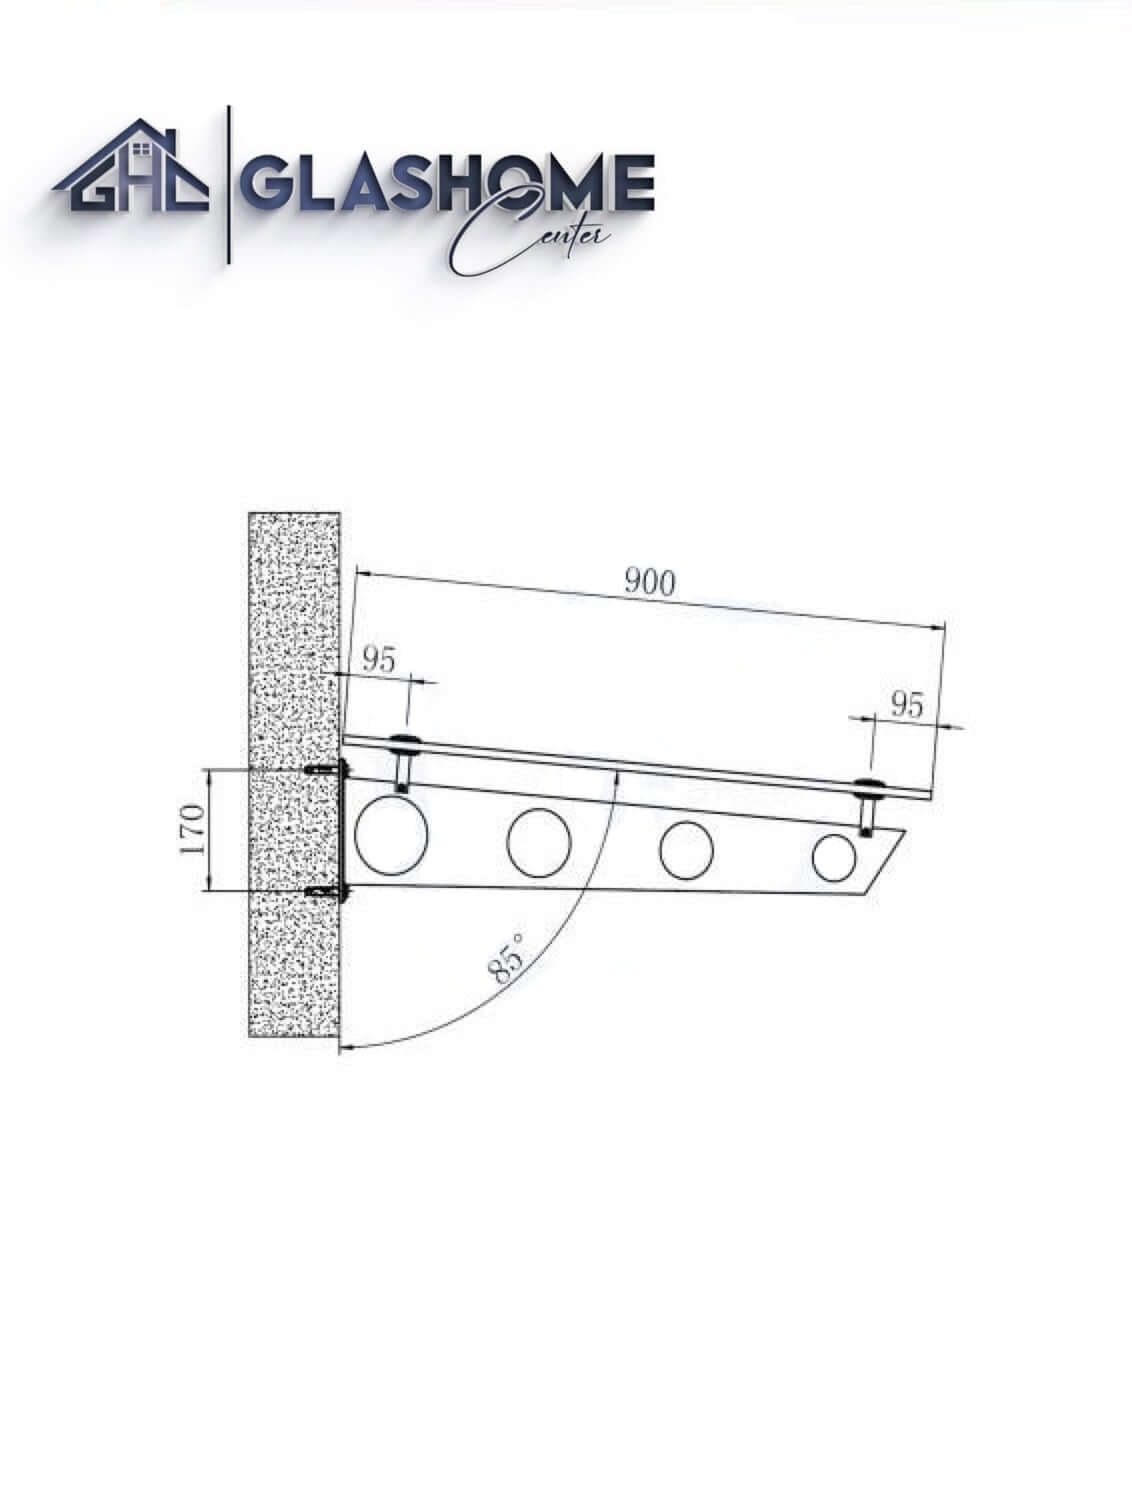 GlasHomeCenter - baldacchino in vetro - vetro trasparente - 230x90 cm - vetro di sicurezza stratificato 13,1 mm - incl.3 staffe in acciaio inox nero variante "Stoccolma"